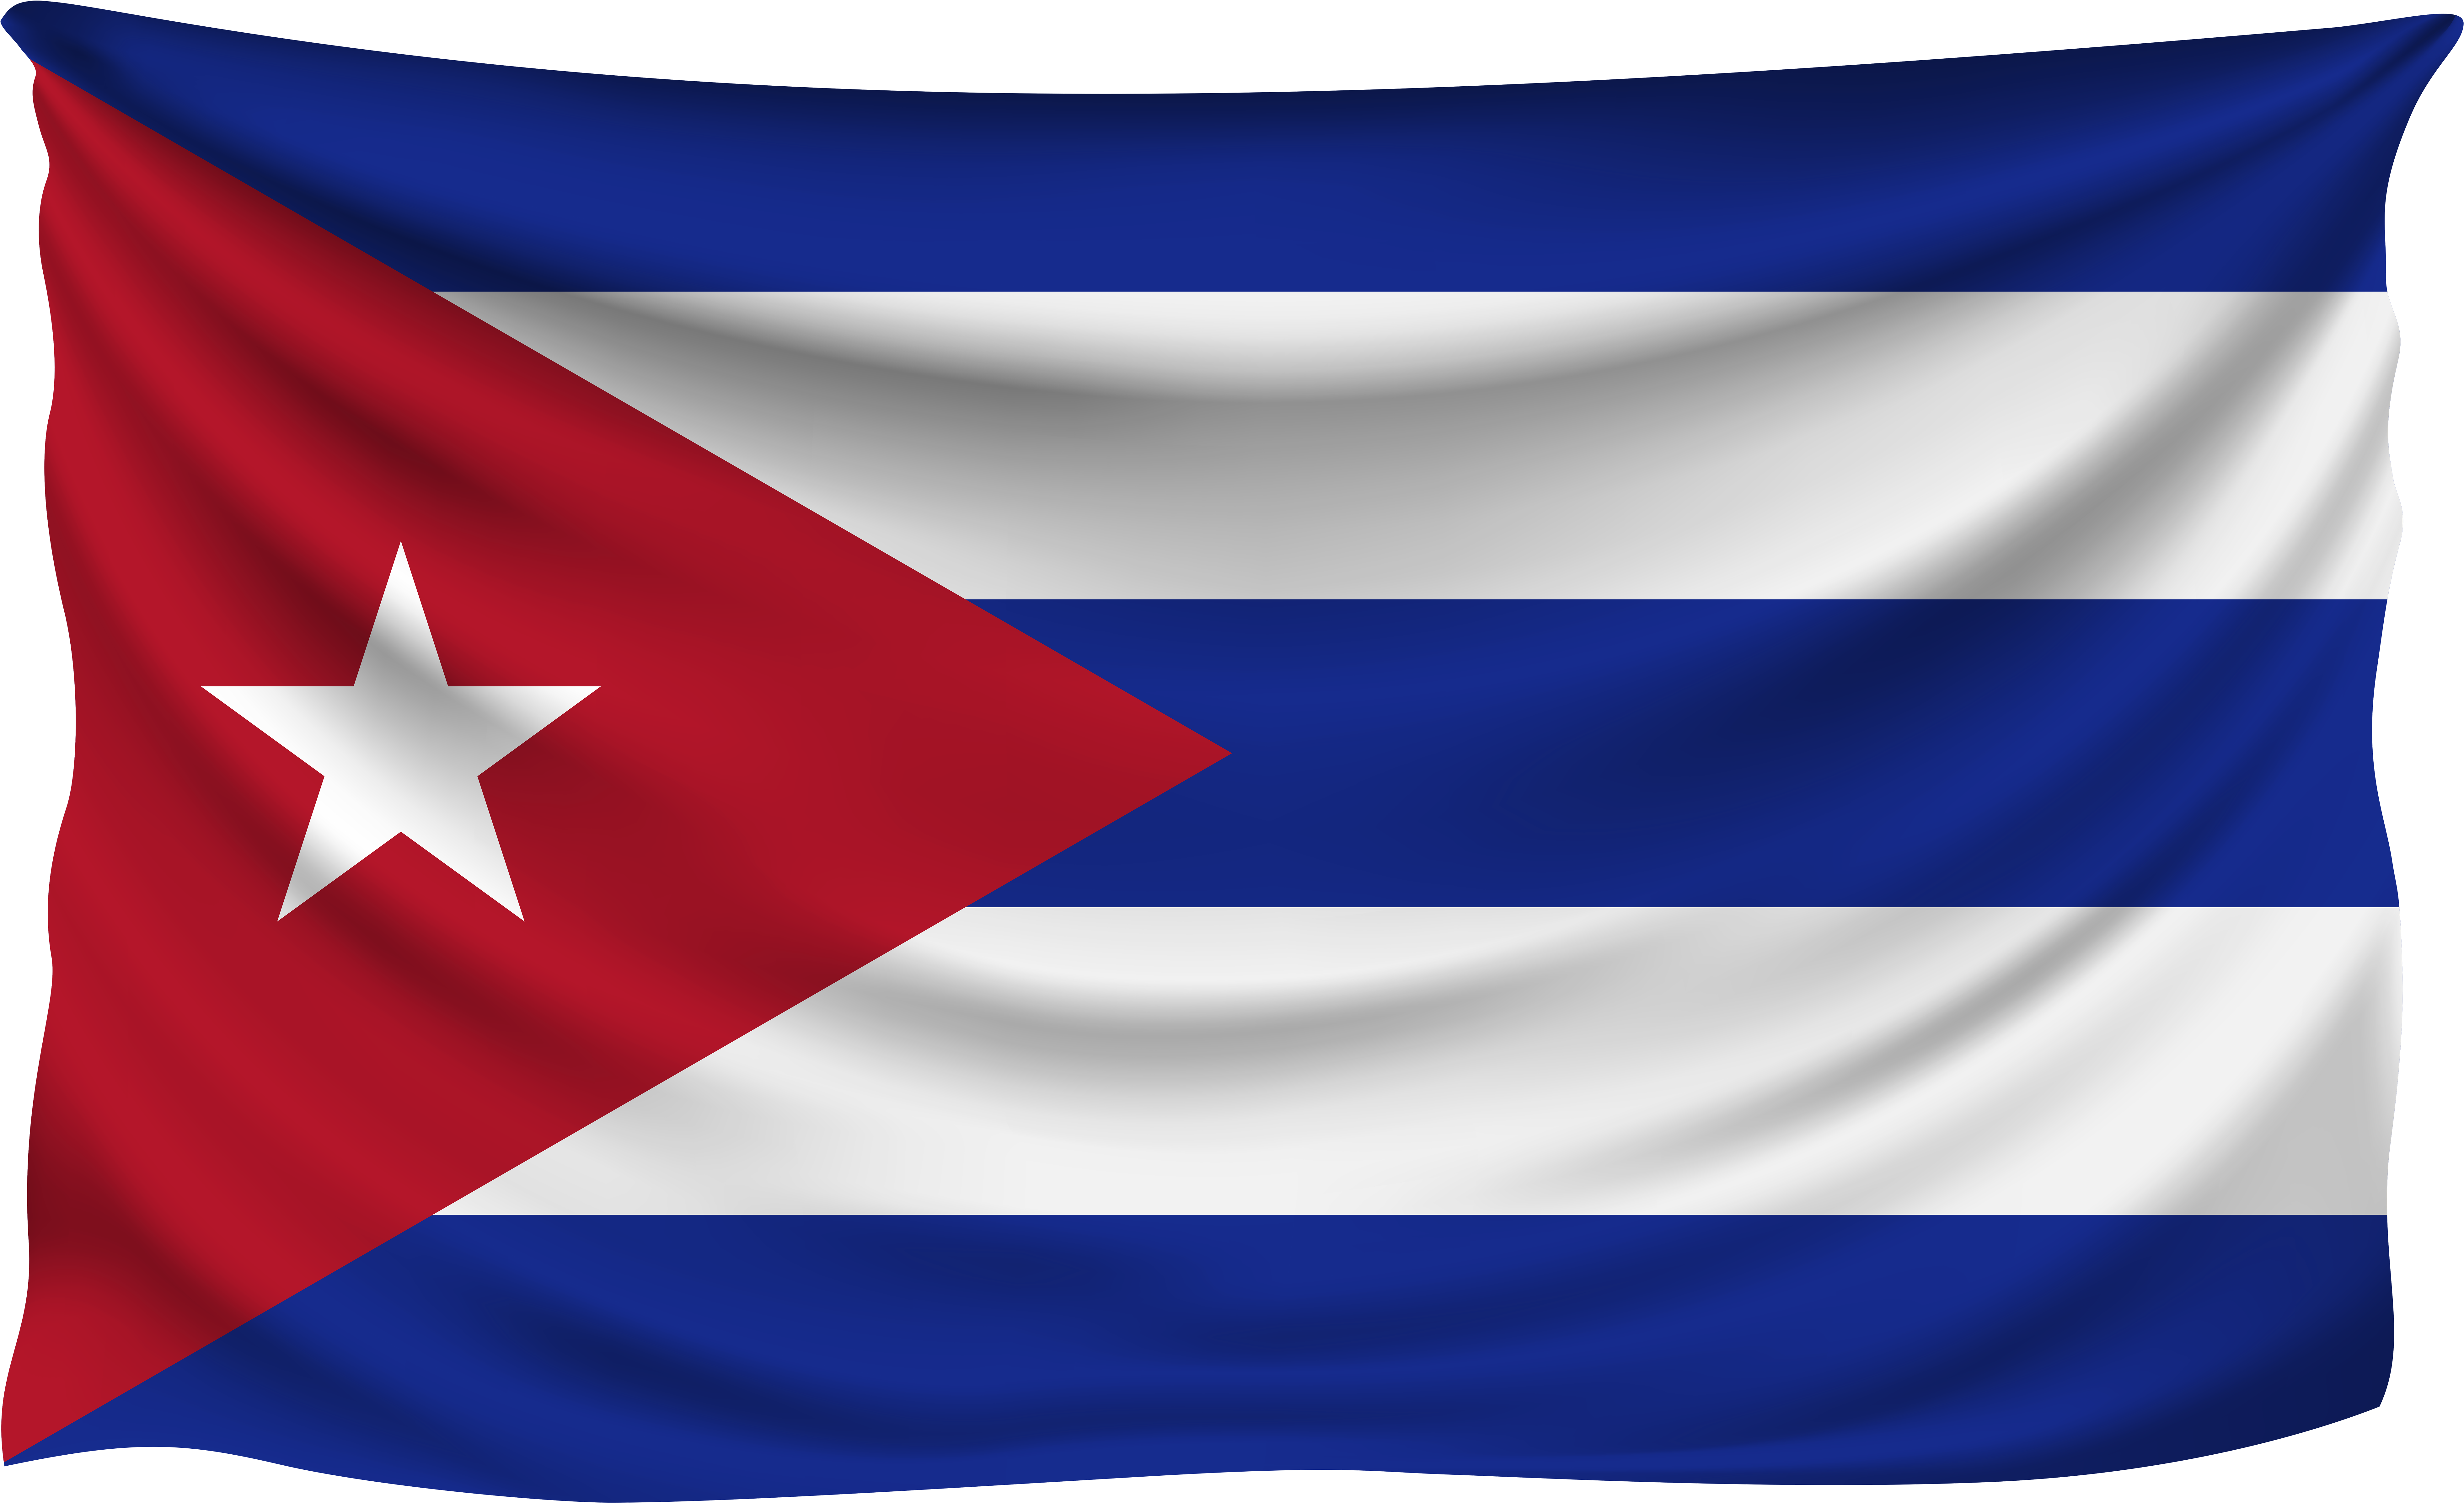 Cuba Flag PNG HD Quality